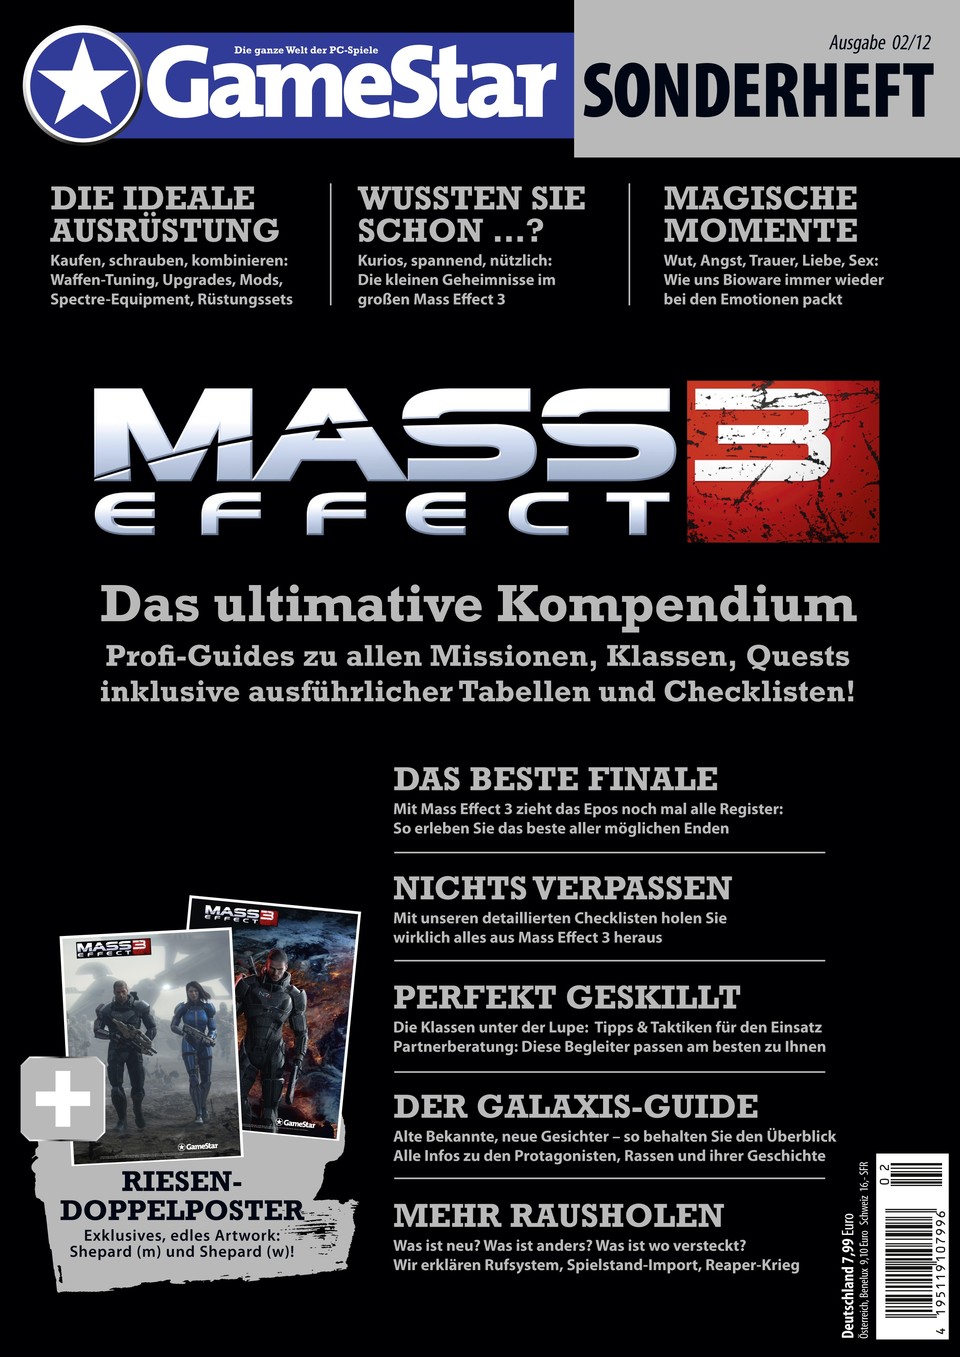 Ab dem 20.03. am Kiosk: Das ultimative Mass Effect 3 Sonderheft unter anderem mit Guides, Hintergrund-Infos, Doppelposter und Charakter-Vorstellung zum Sci-Fi-Abenteuer.